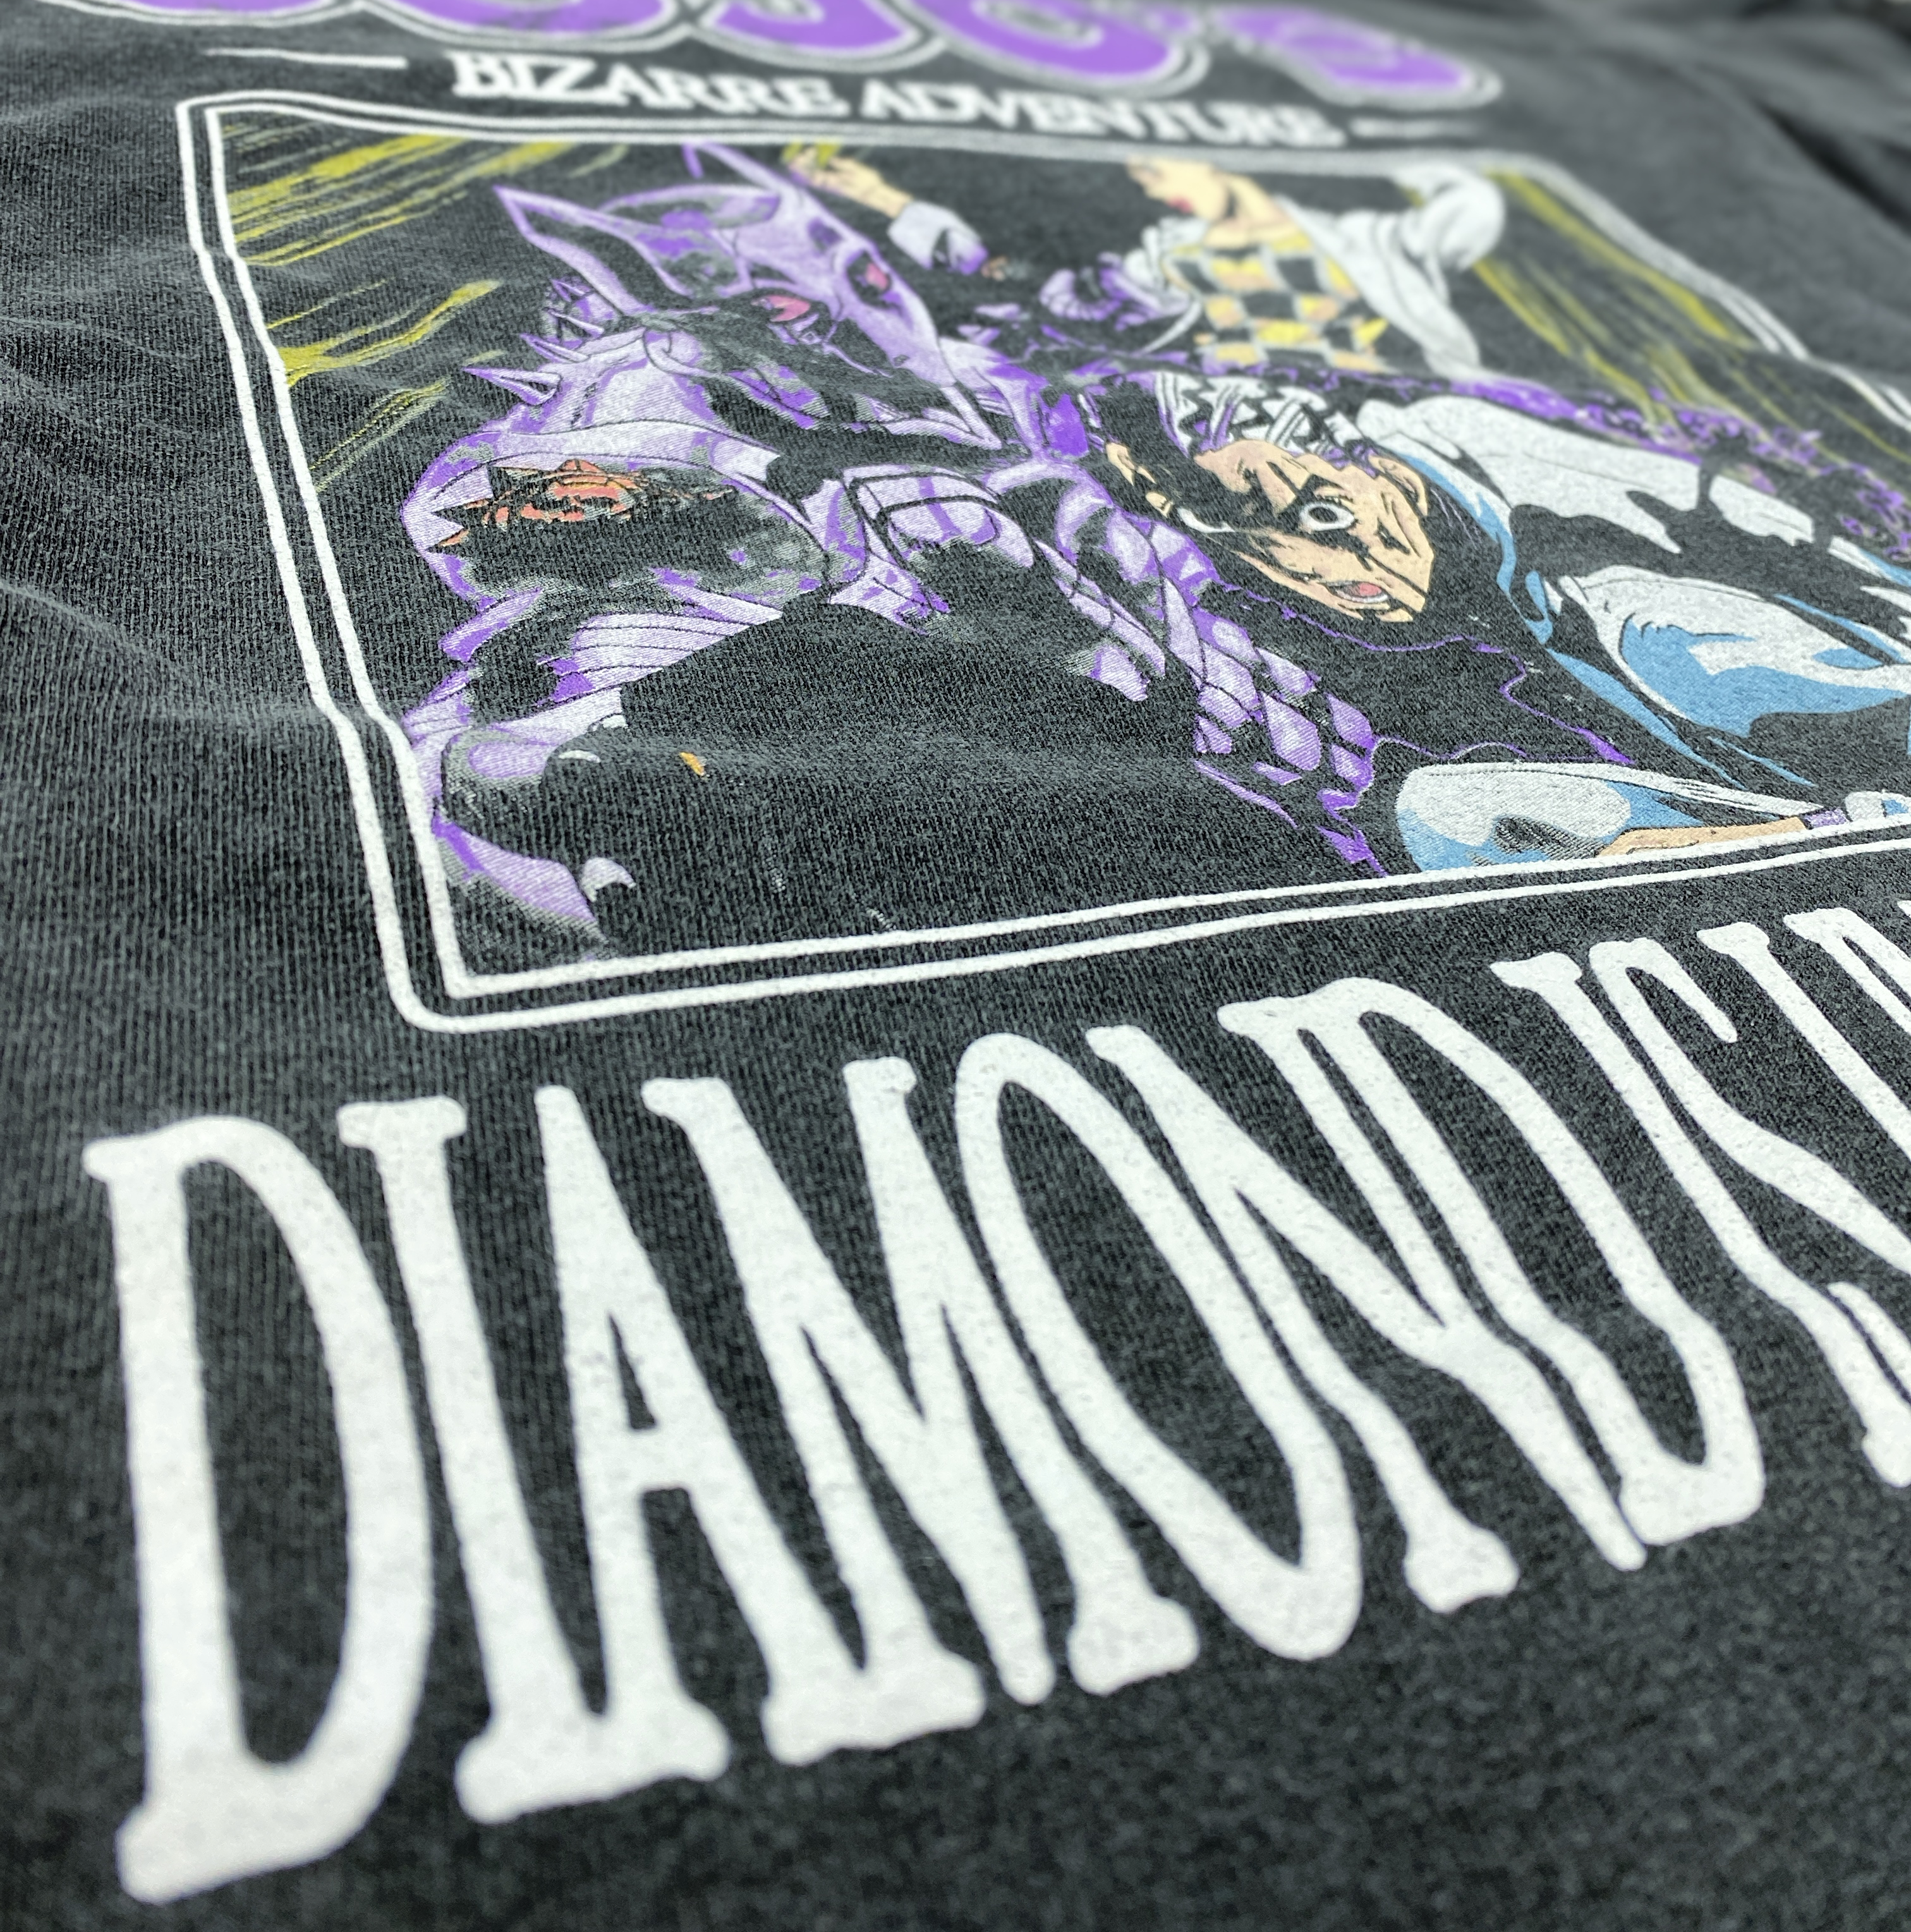 JoJo's Bizarre Adventure - Diamond Is Unbreakable T-Shirt - Crunchyroll Exclusive! image count 1